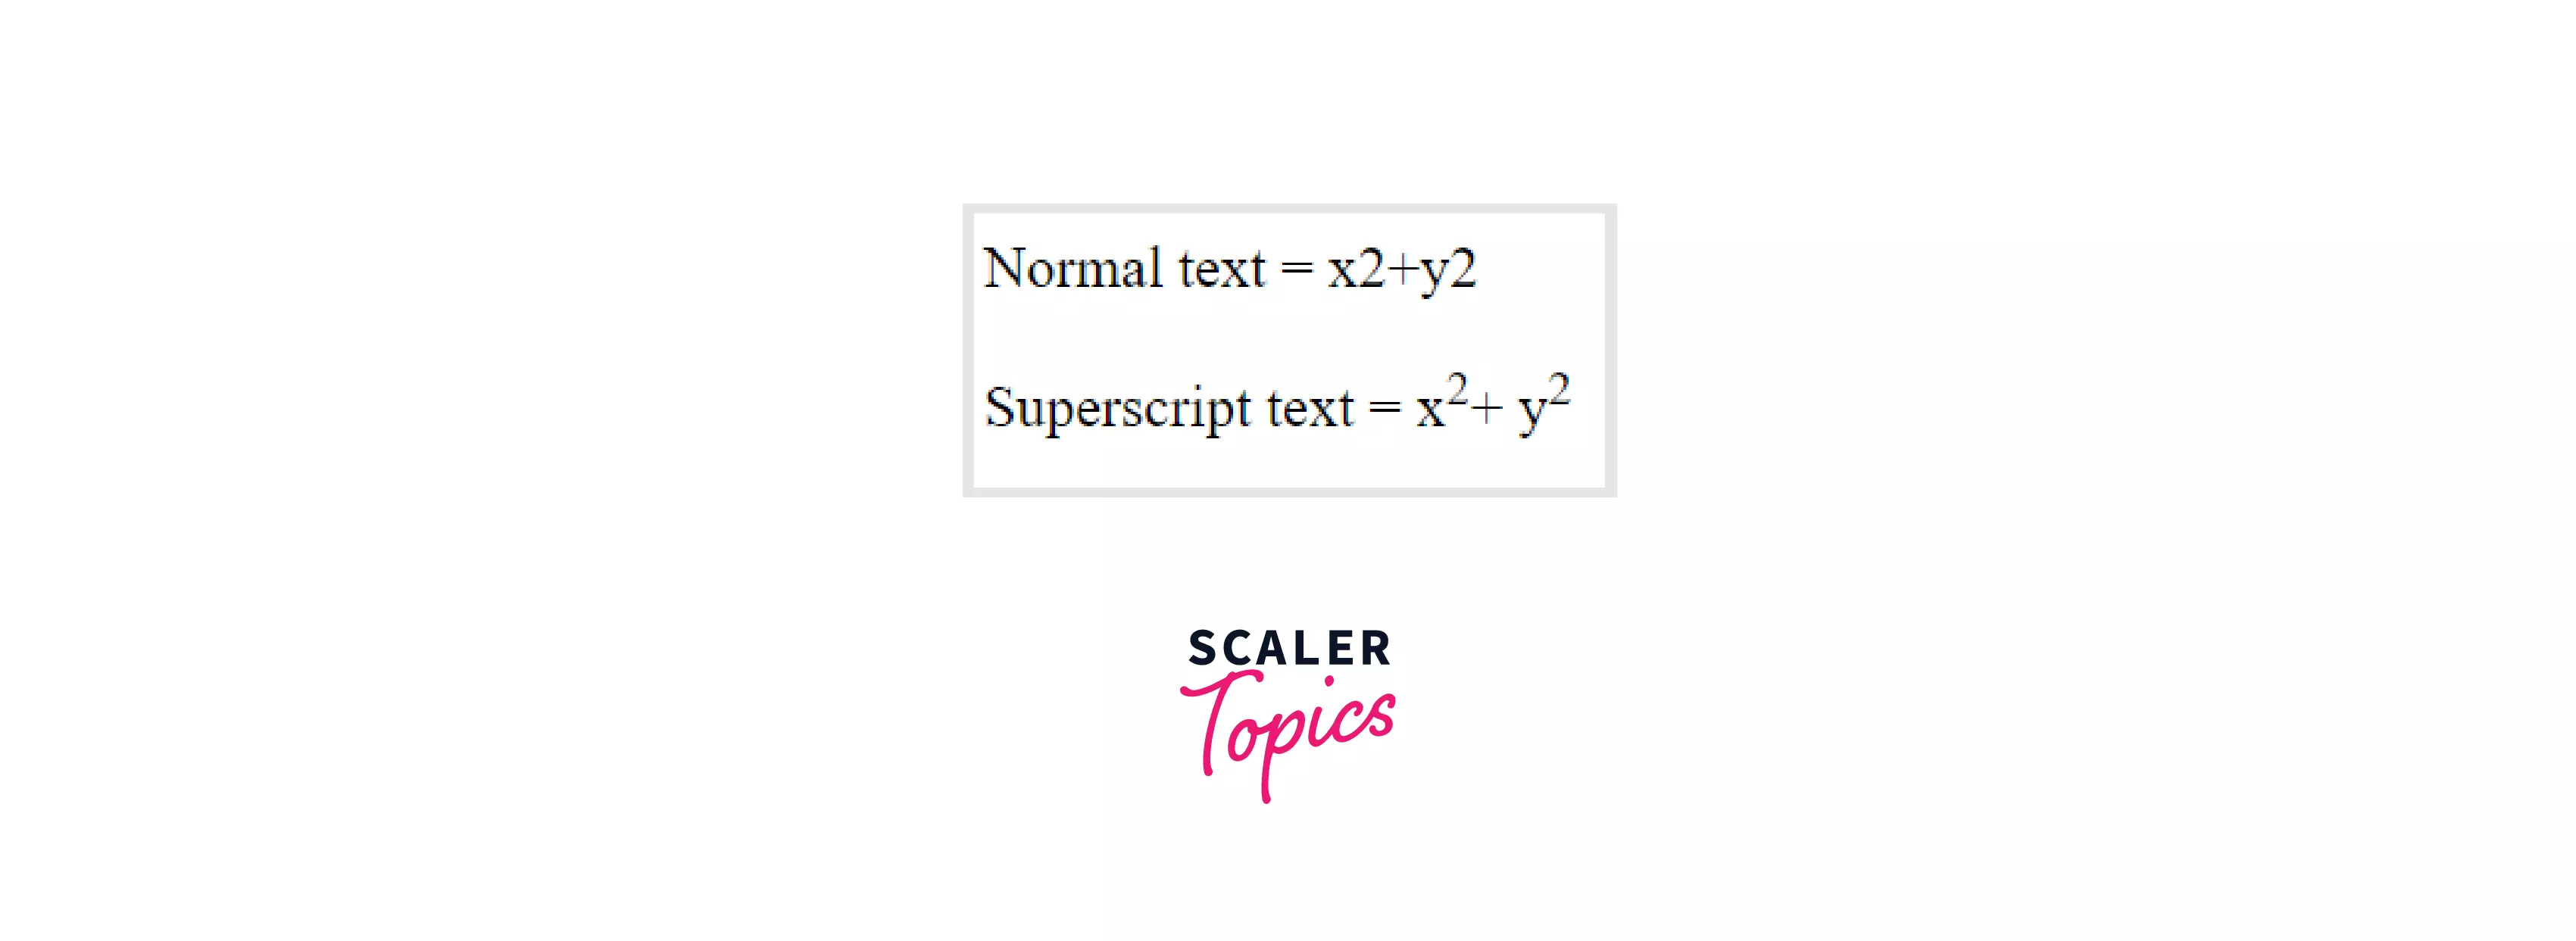 superscript text